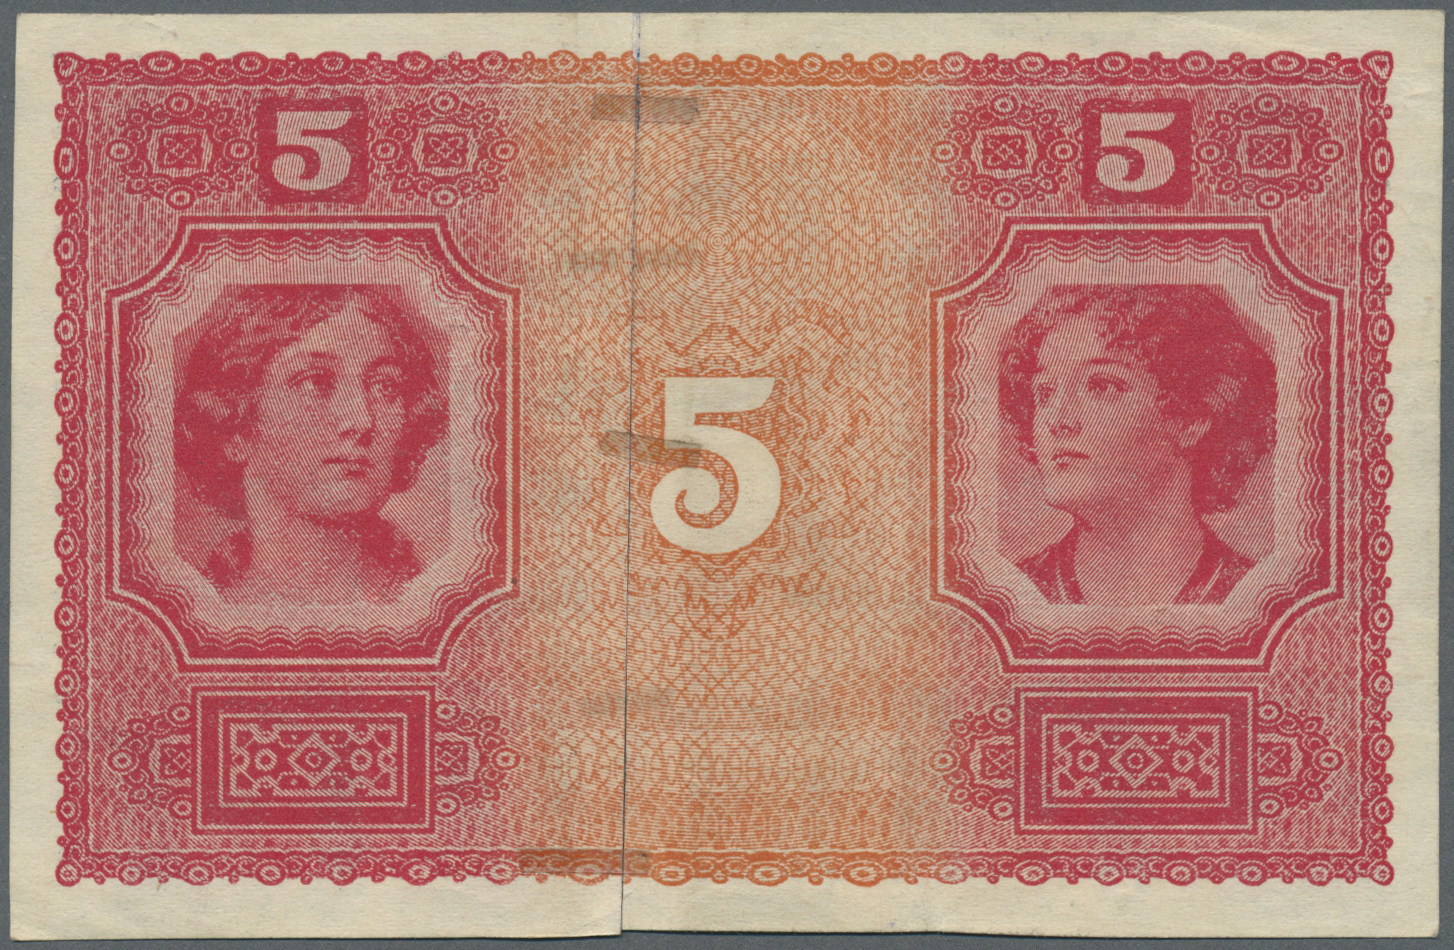 00174 Austria / Österreich: Progressive Proof Of The Oesterreichisch-ungarische Bank / Osztrak-magyar Bank 5 Kronen 1918 - Austria